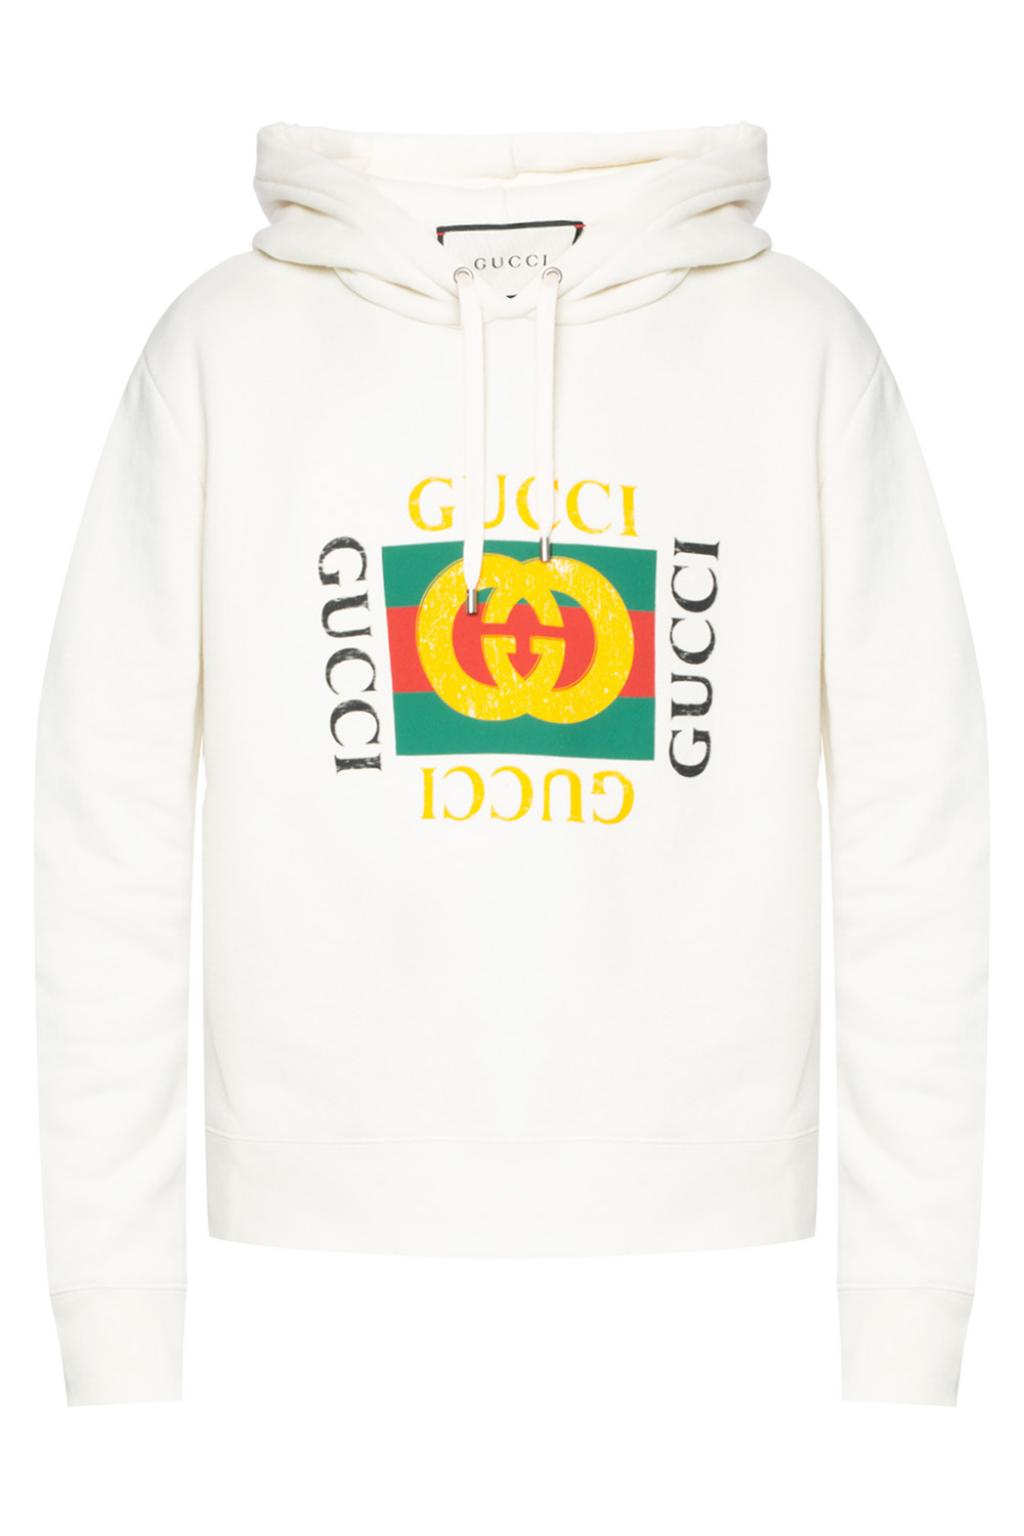 Endelig Kommunisme Ved en fejltagelse Logo-printed sweatshirt Gucci - Vitkac US